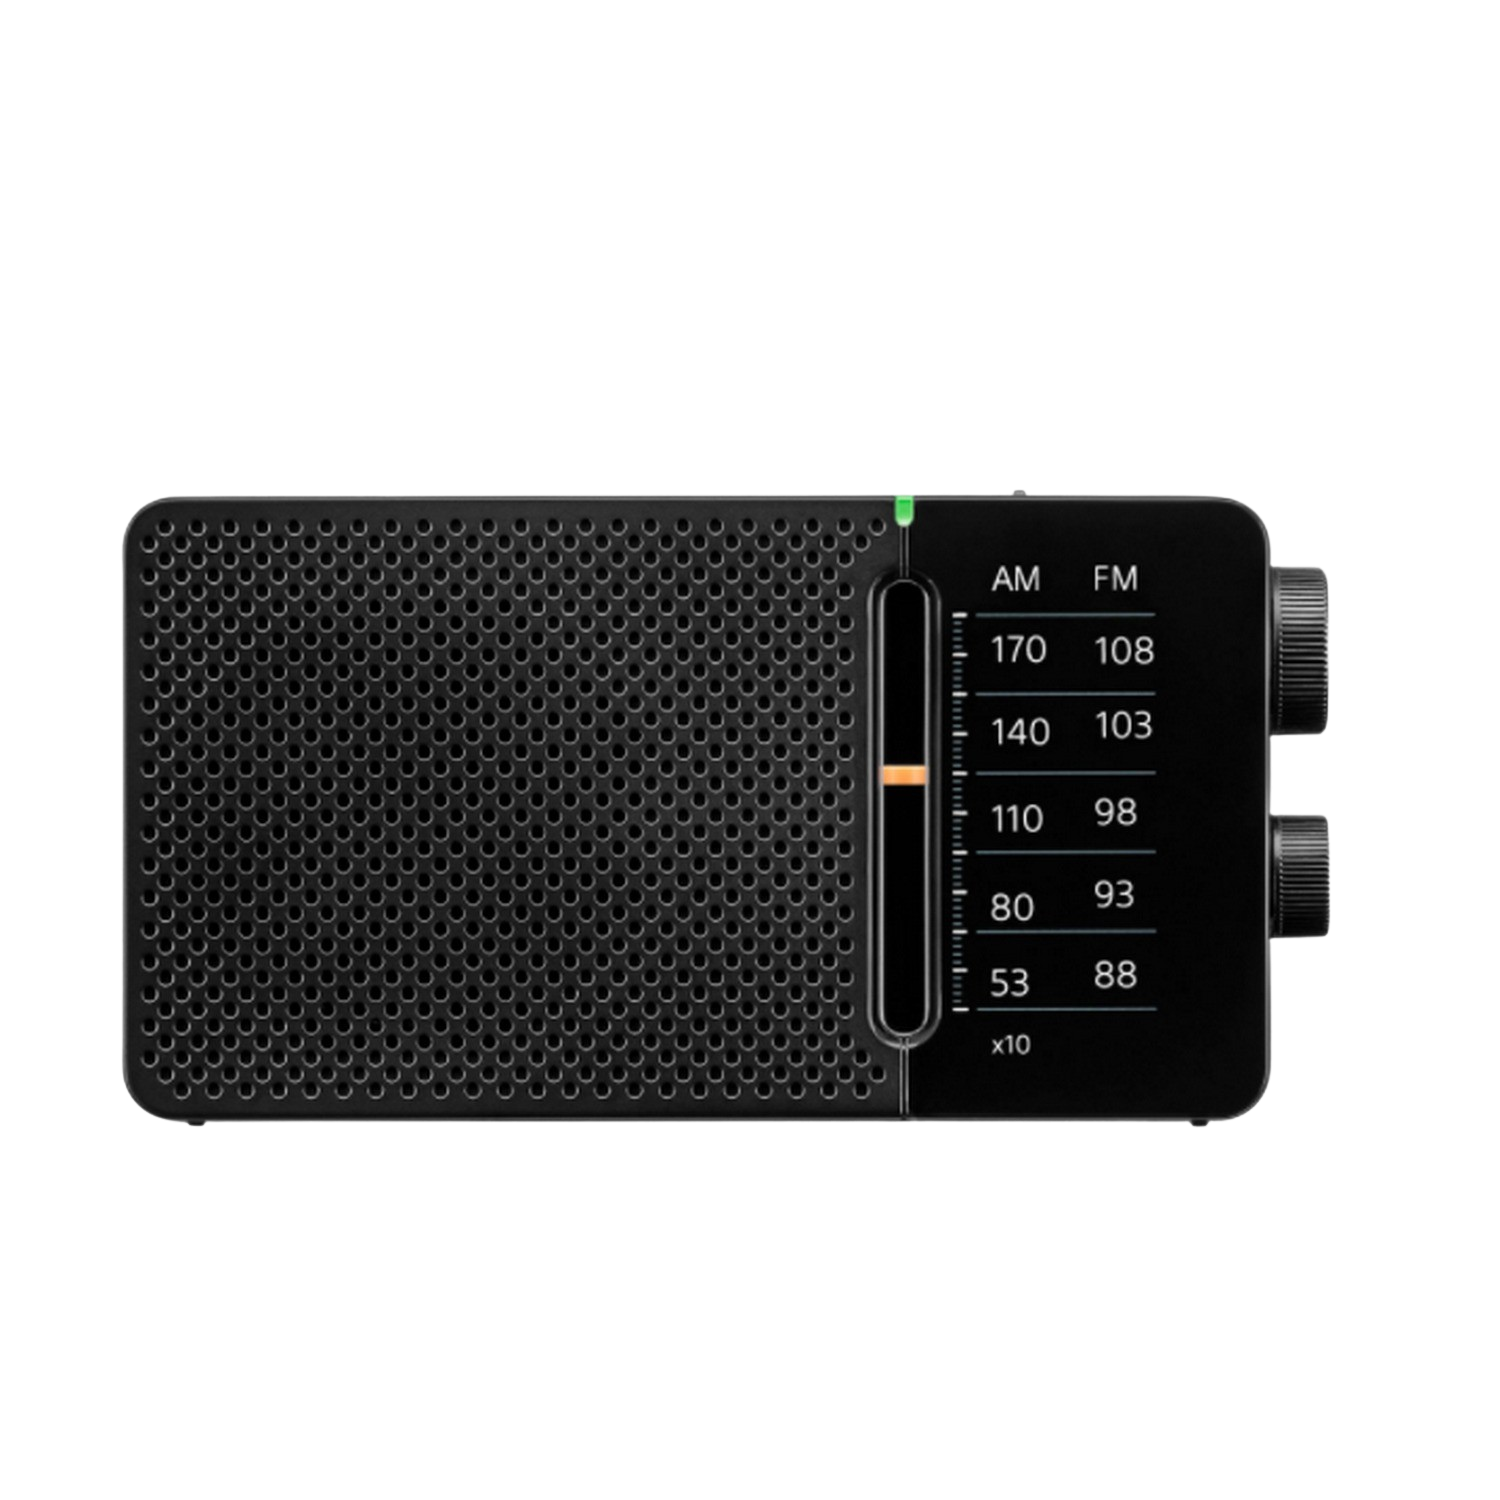 Radio Fmam Sangean sr36 de bolsillo pocket 110 amfm negra altavoz integrado antena salida auriculares otros ssr36b led sintonizador dsp 5201710